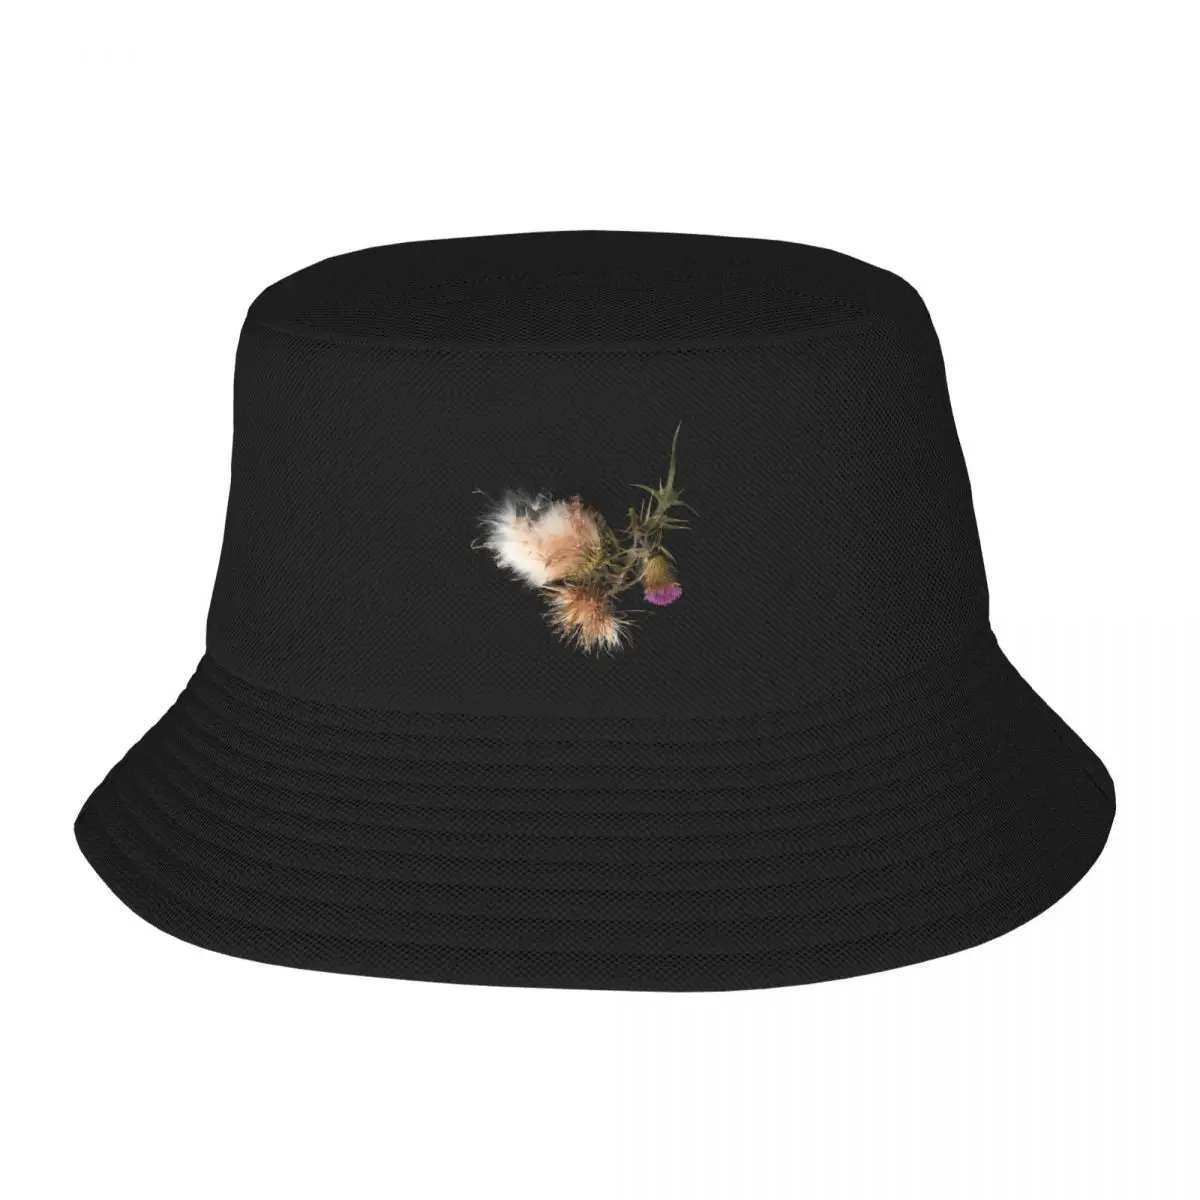 

New Thistle Painting - Wild Flower Gift Bucket Hat Uv Protection Solar Hat Fishing Caps Baseball Cap For Men Women's